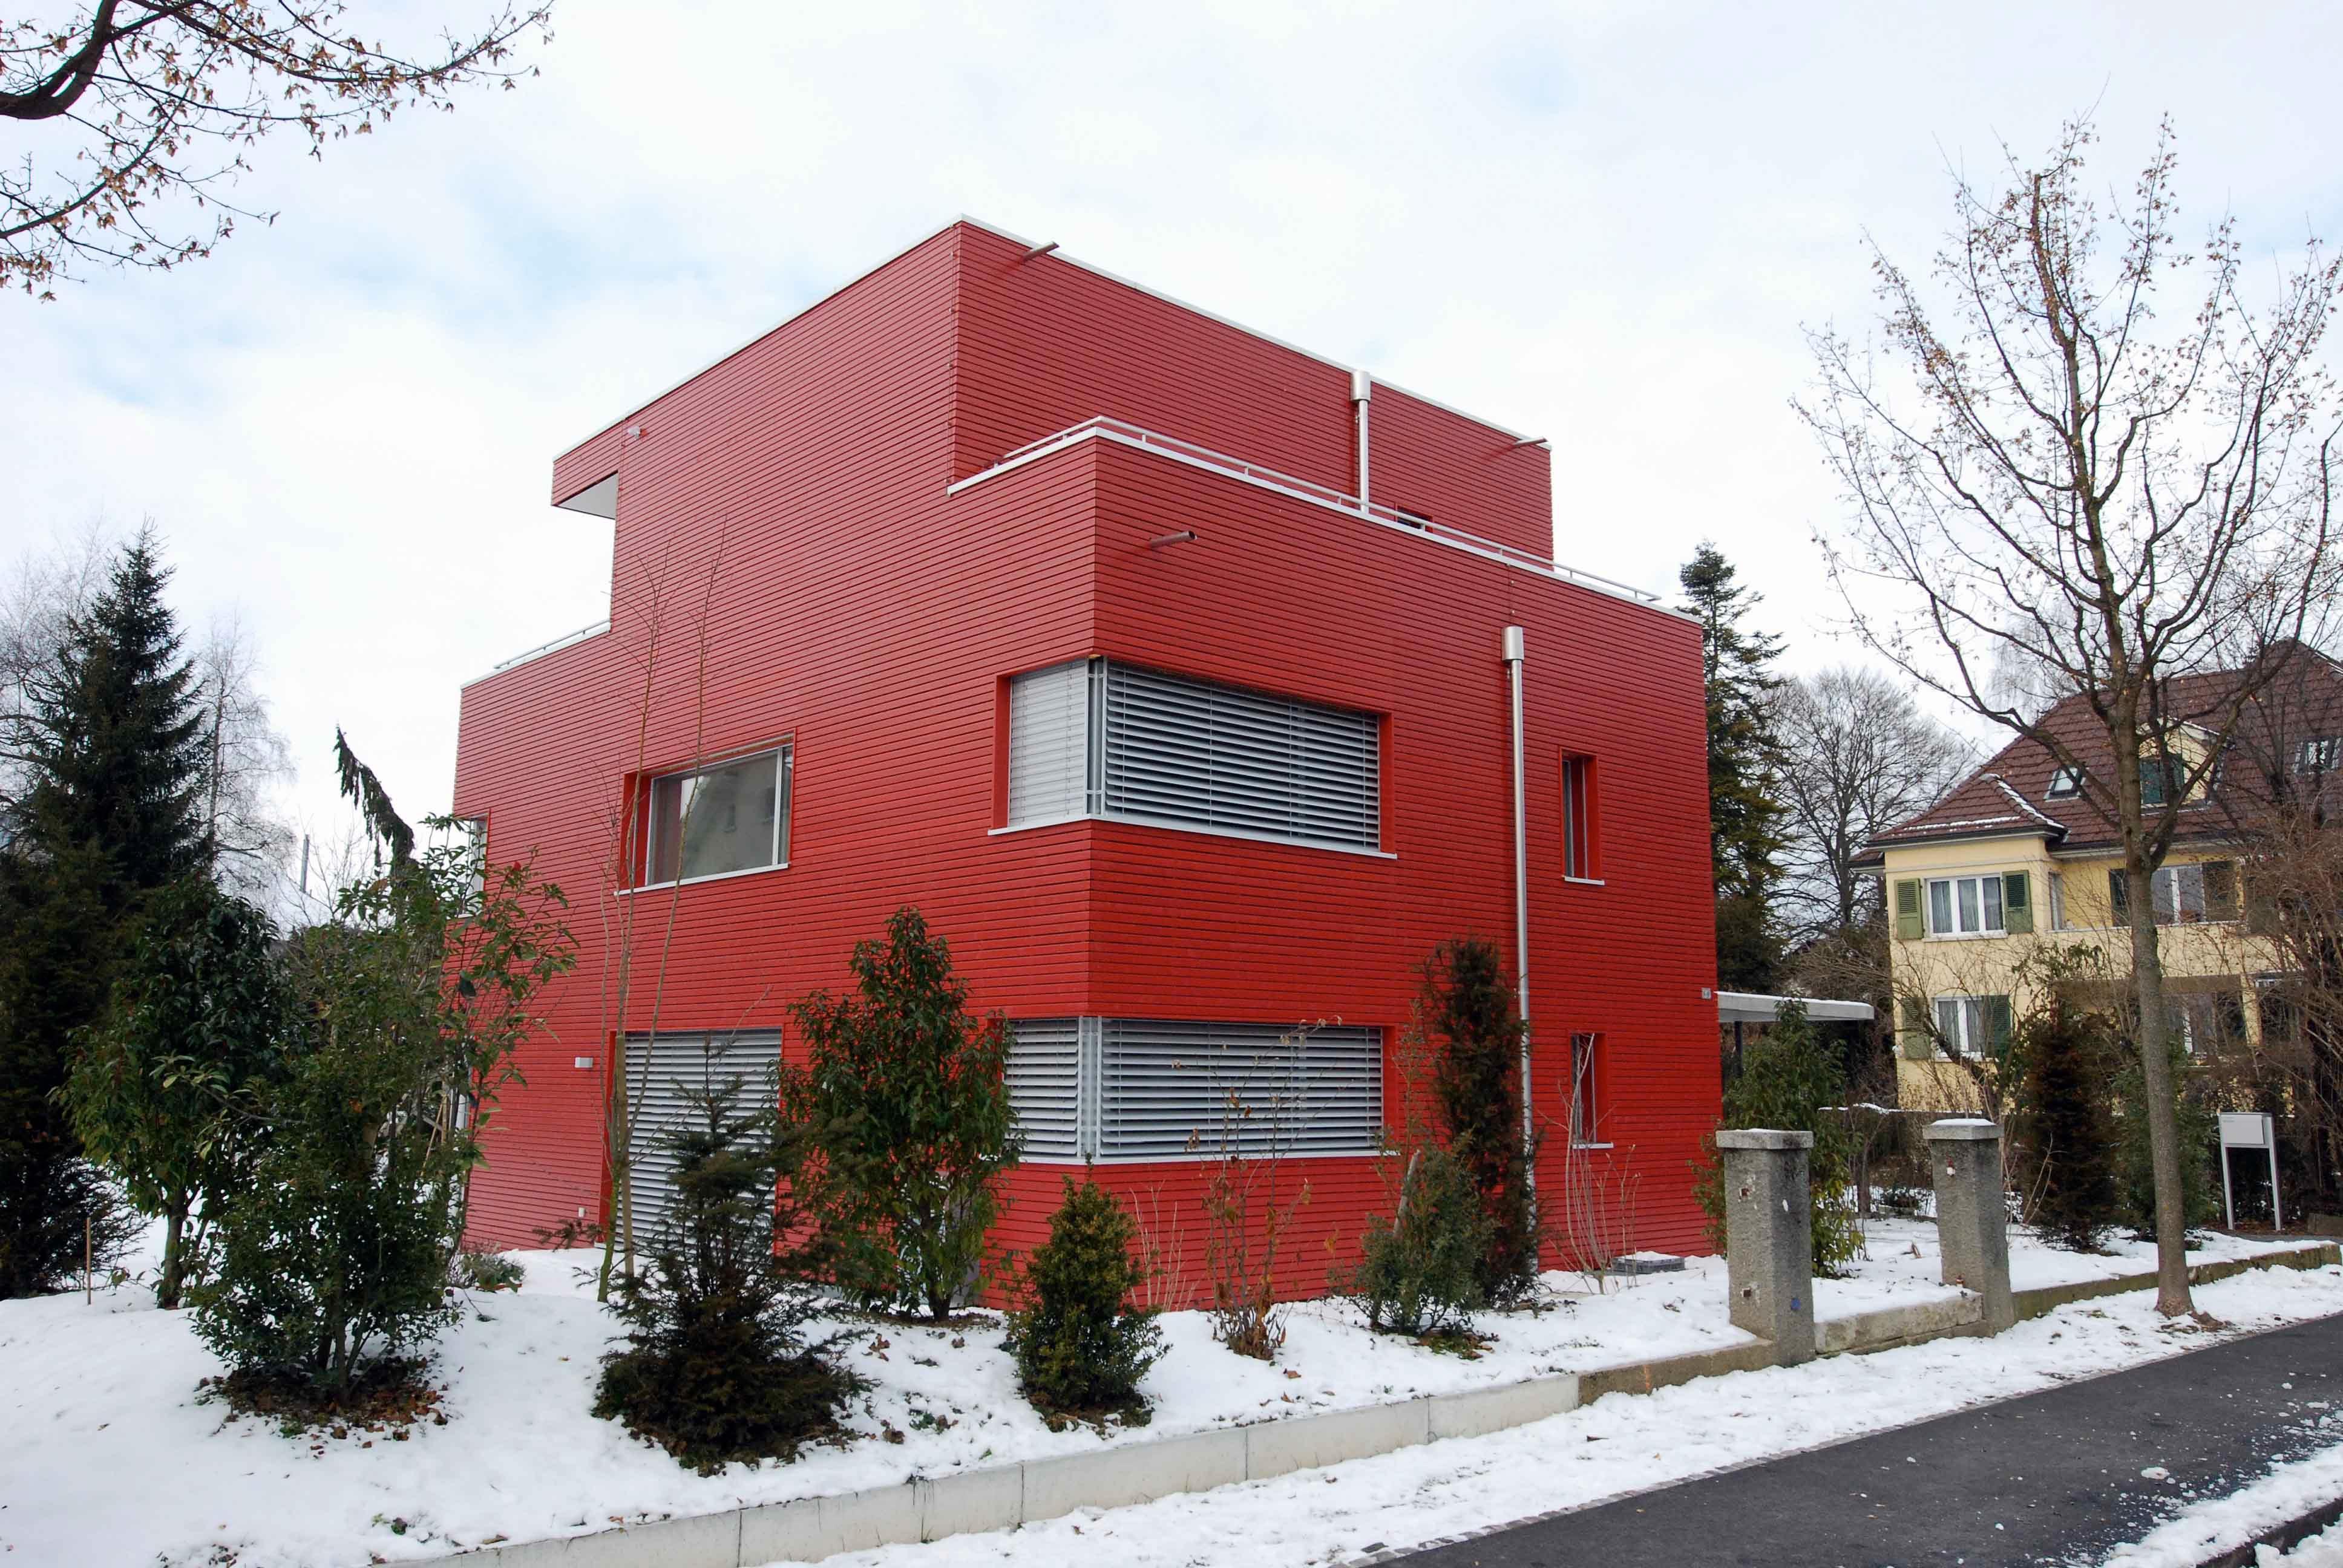  Der rote Kubus in Thun ist ein schönes Beispiel für eine Architektur-Reportage